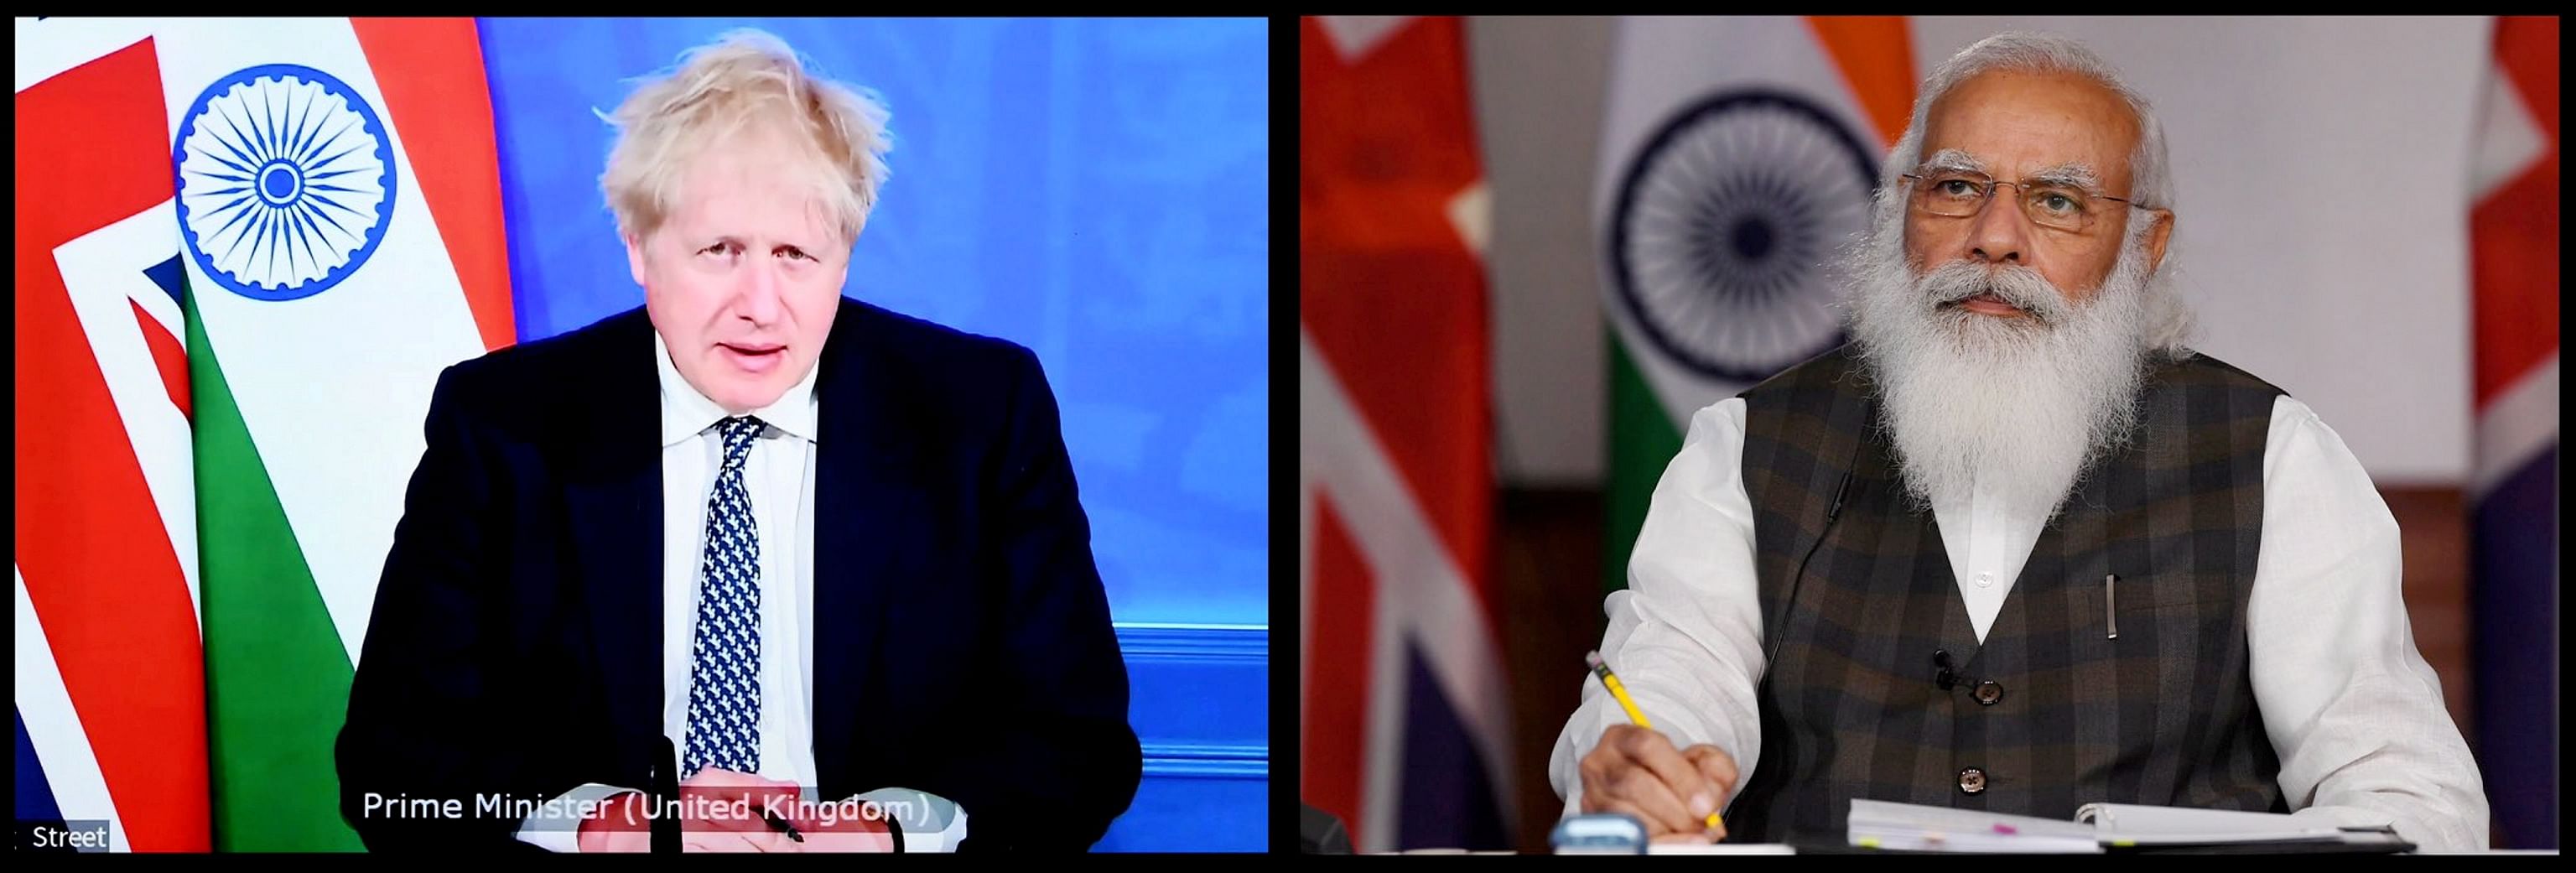 UK Prime Minister Boris Johnson and Indian Prime Minister Modi. Credit: PTI Photo